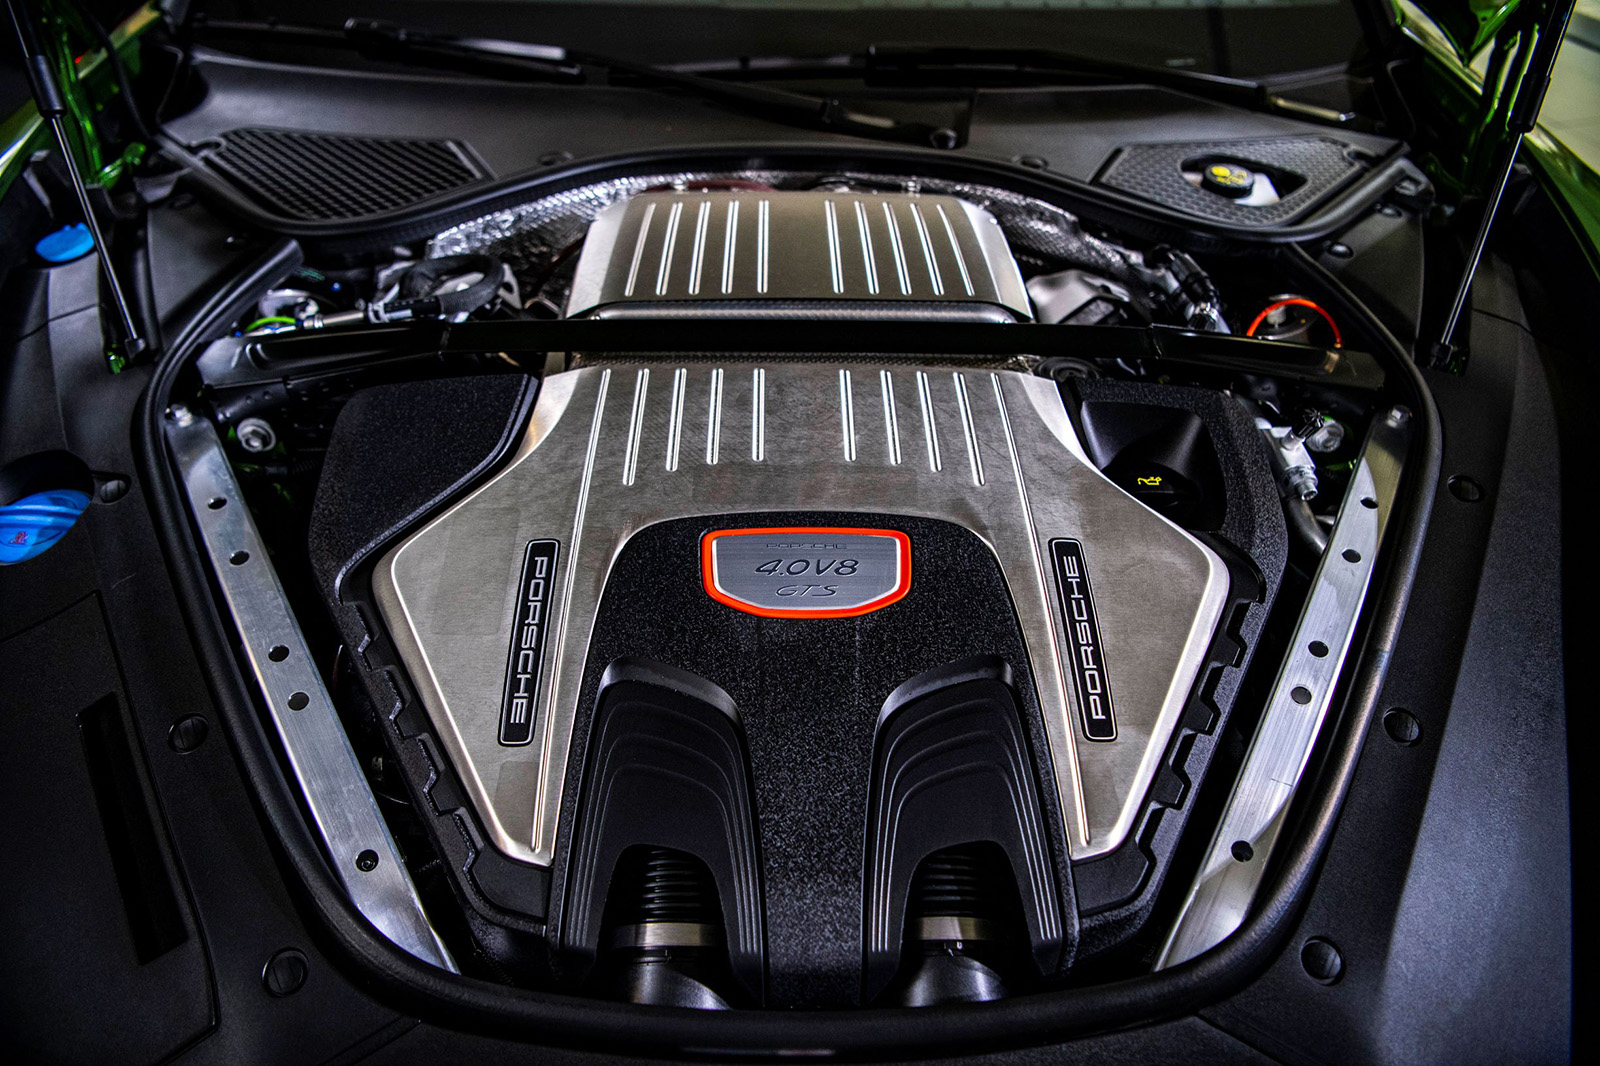 全新Porsche Panamera GTS車系採用具備強悍動能的 4.0 升 V8 雙渦輪引擎，並搭載Porsche原廠精心調校的運動底盤及三氣室氣壓懸吊，展現強勁動力和卓越操駕性能